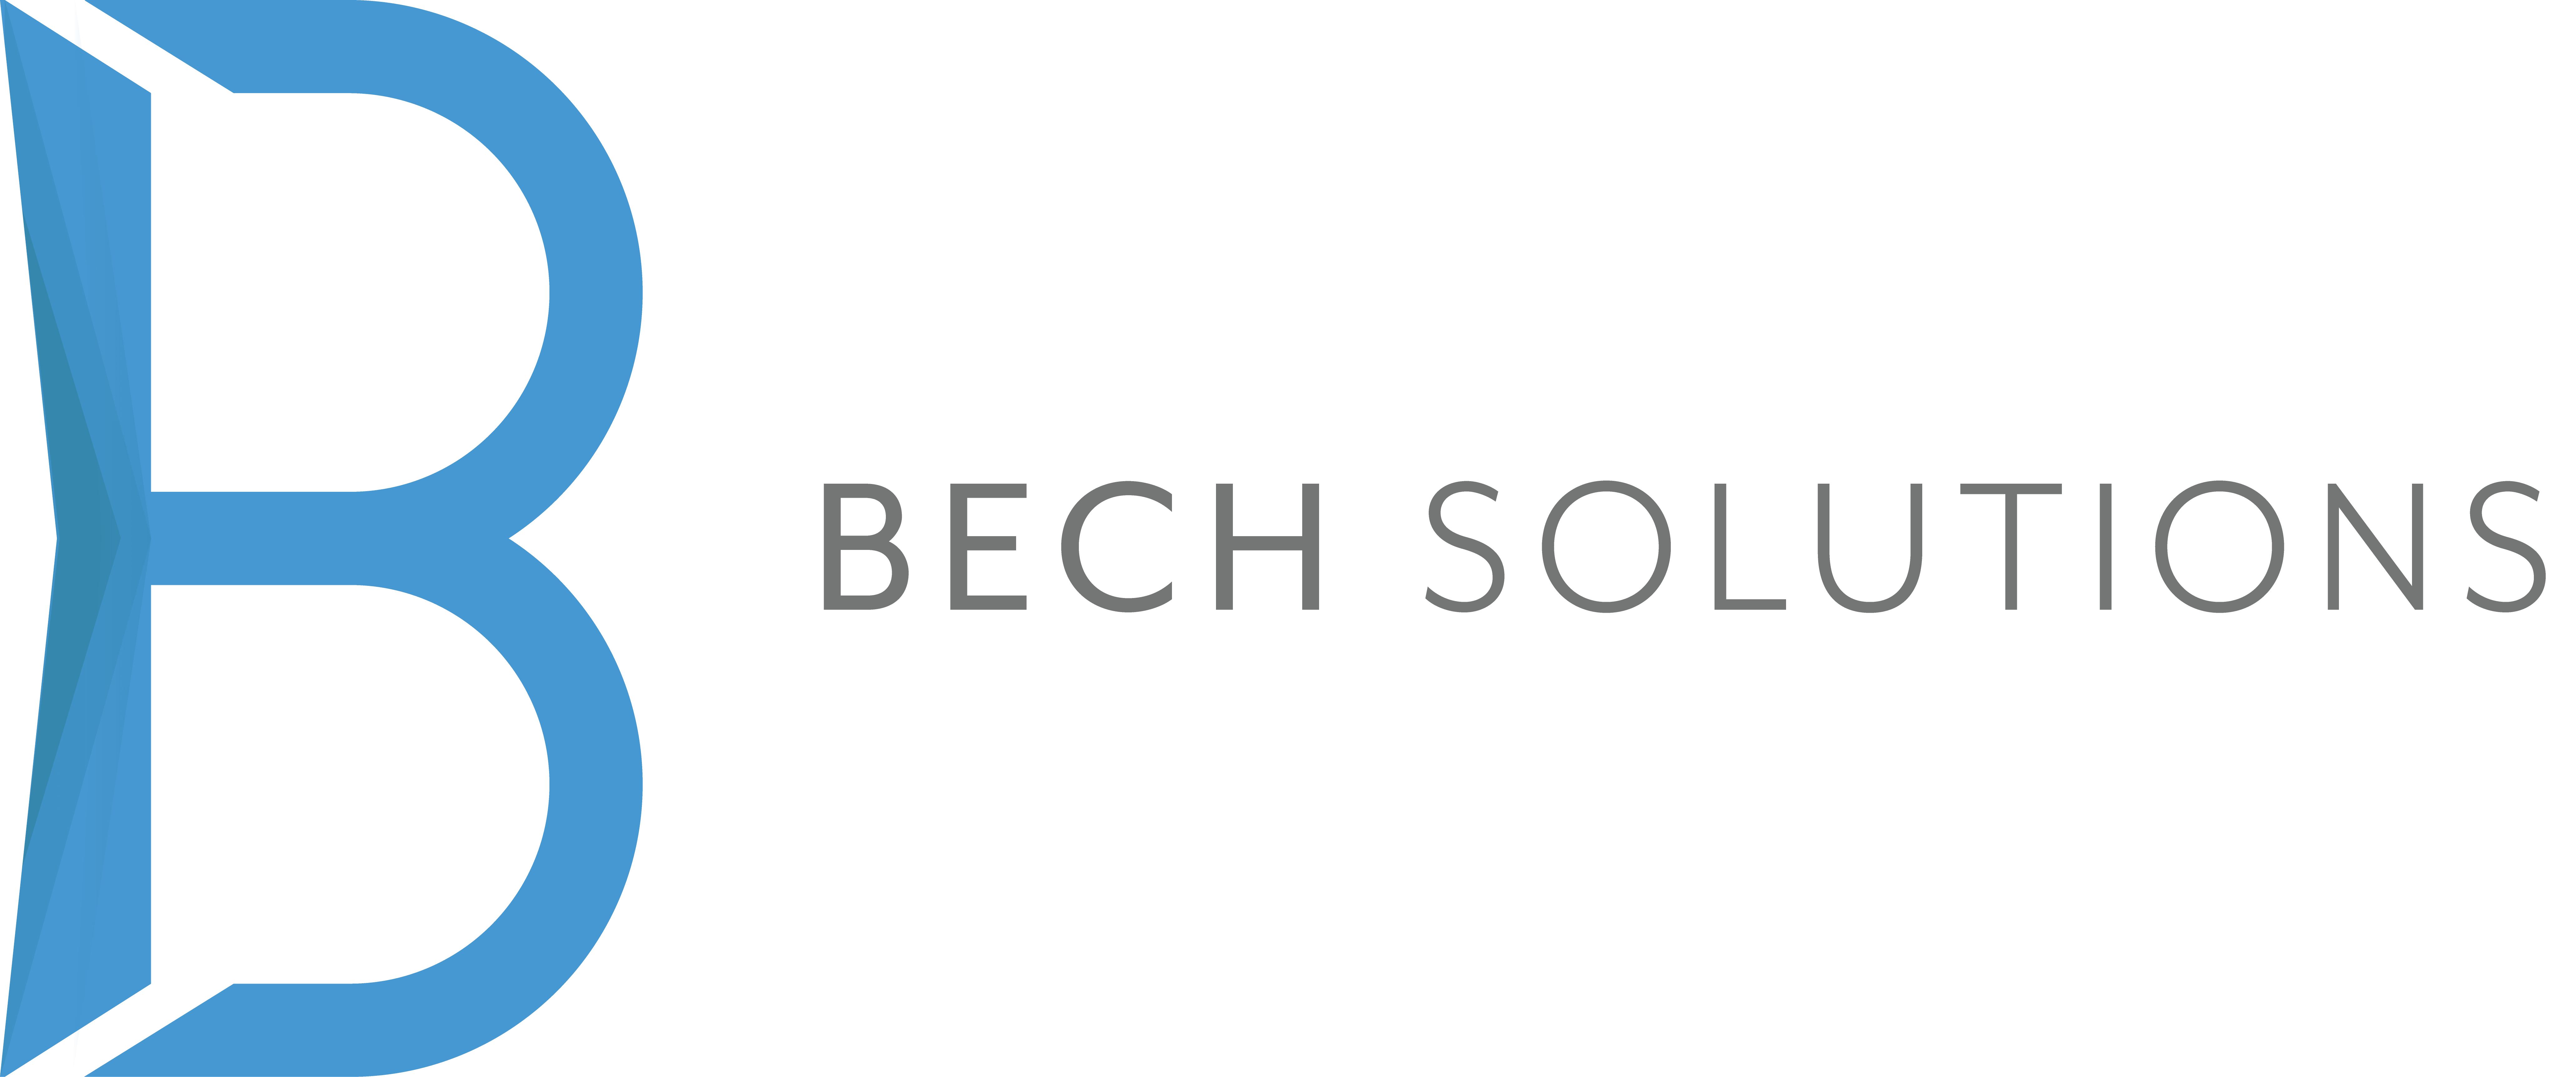 Bech Solutions logo